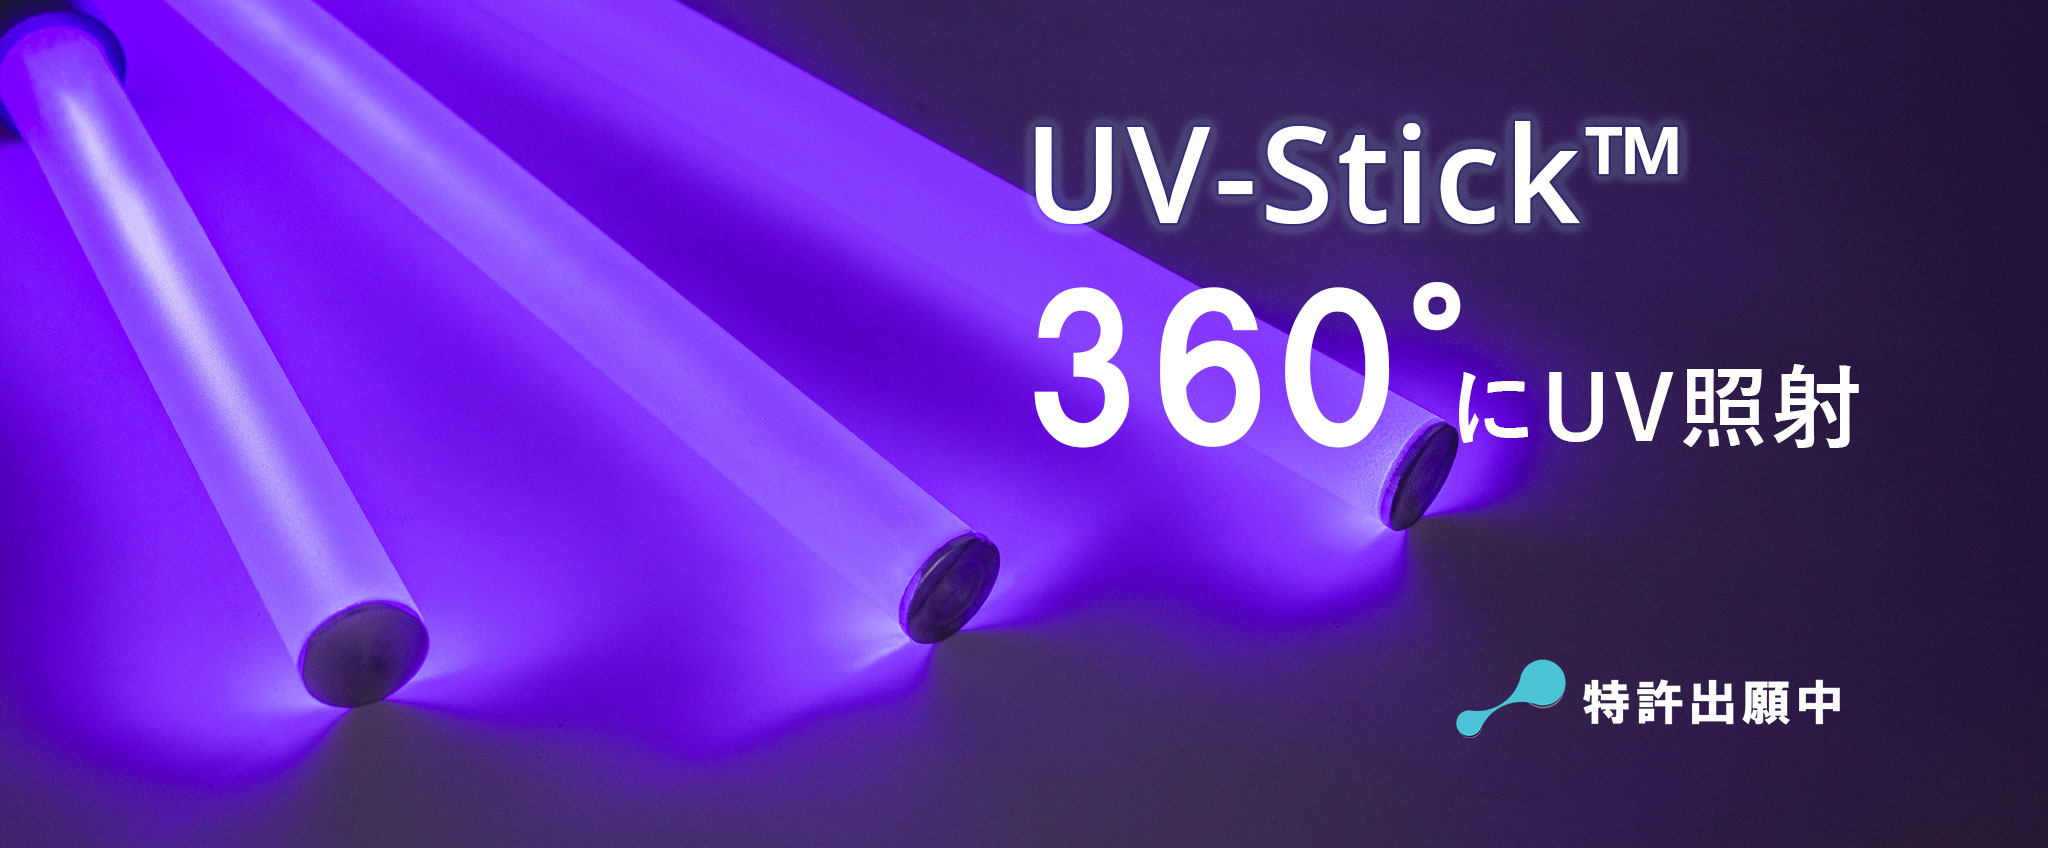 UV-Stick